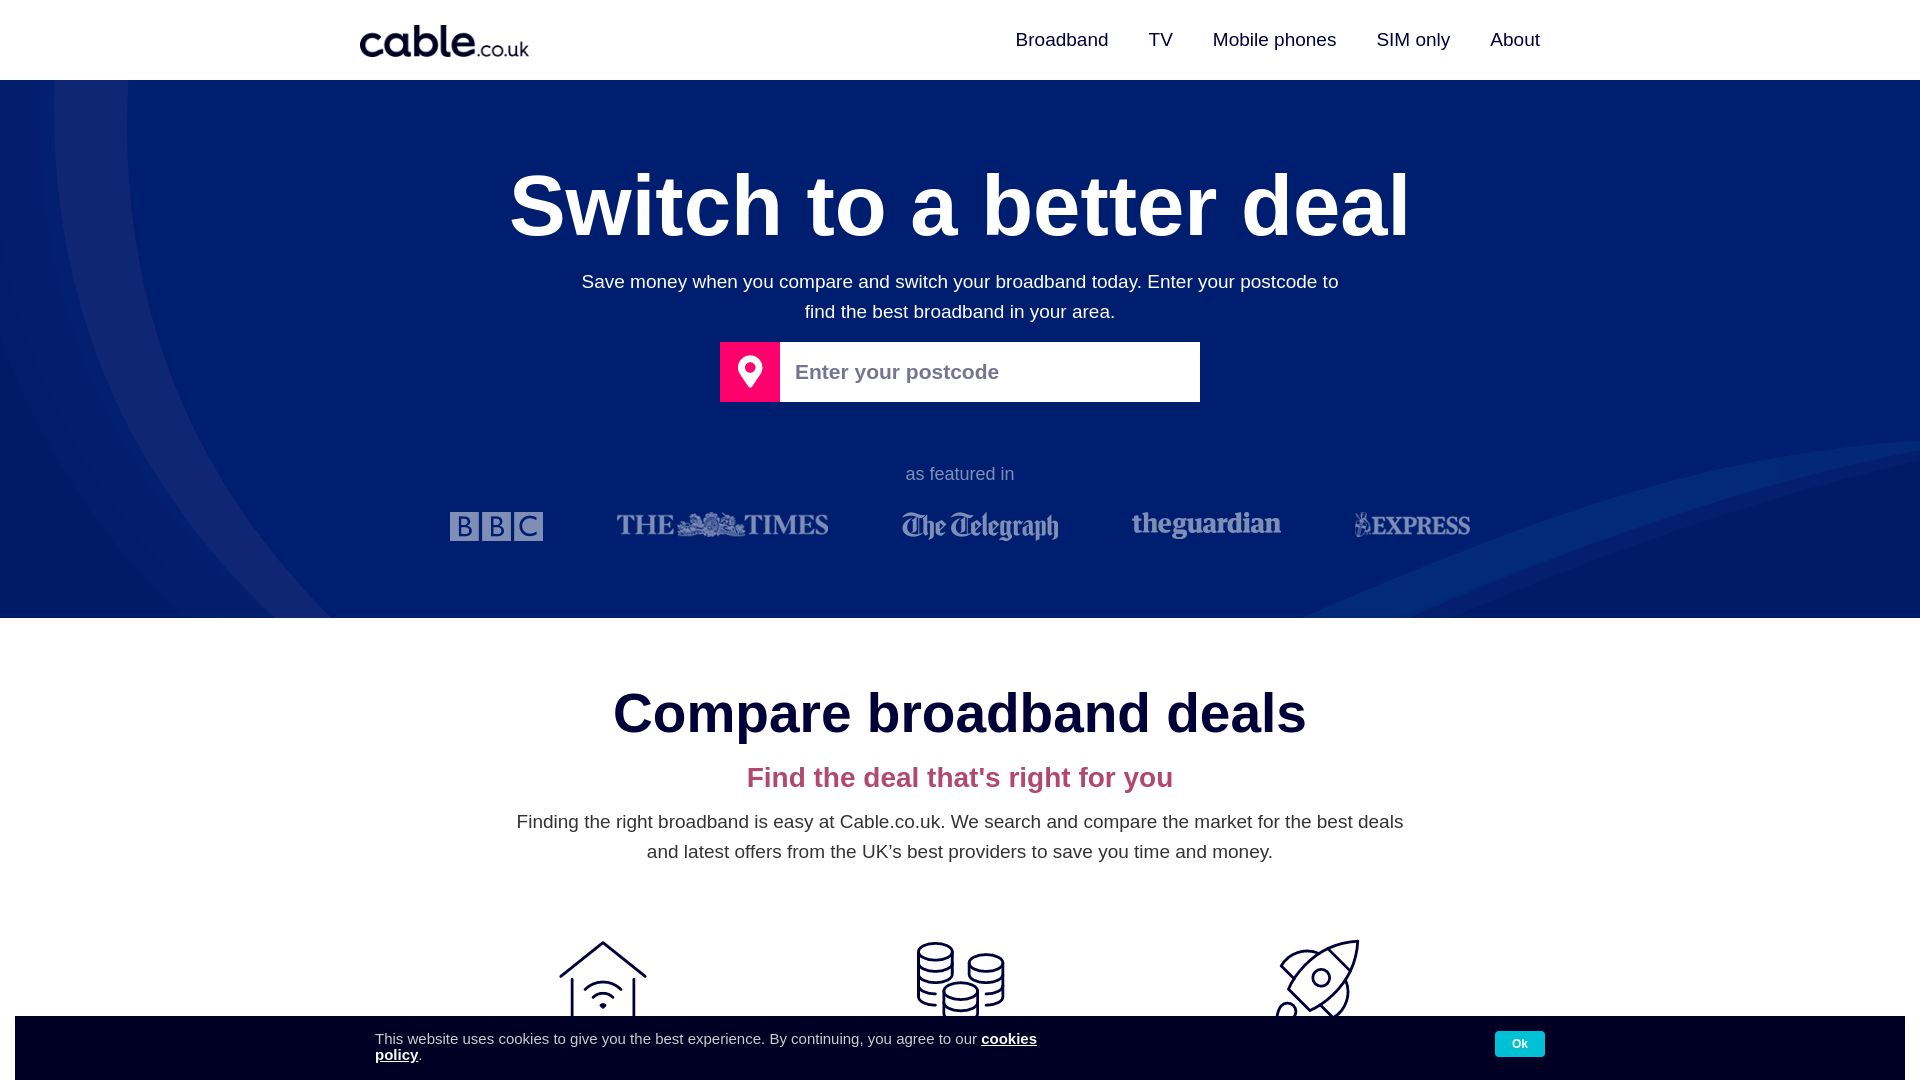 Stato del sito web cable.co.uk è   ONLINE